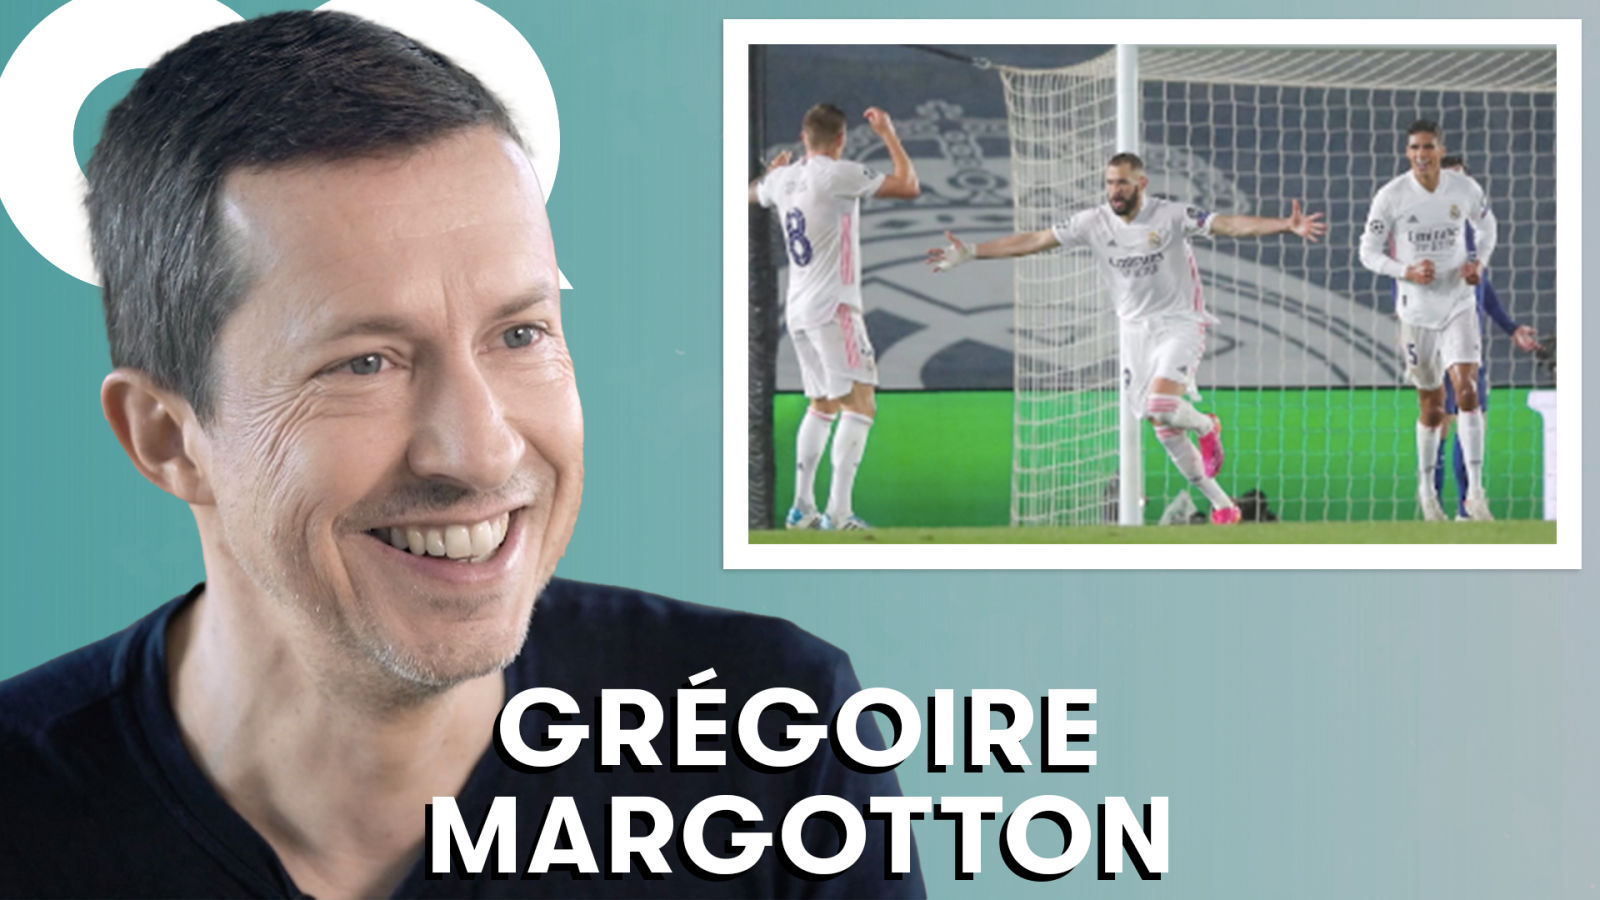 Grégoire Margotton revient sur les carrières de légendes du foot (Benzema, Zidane, Platini...)